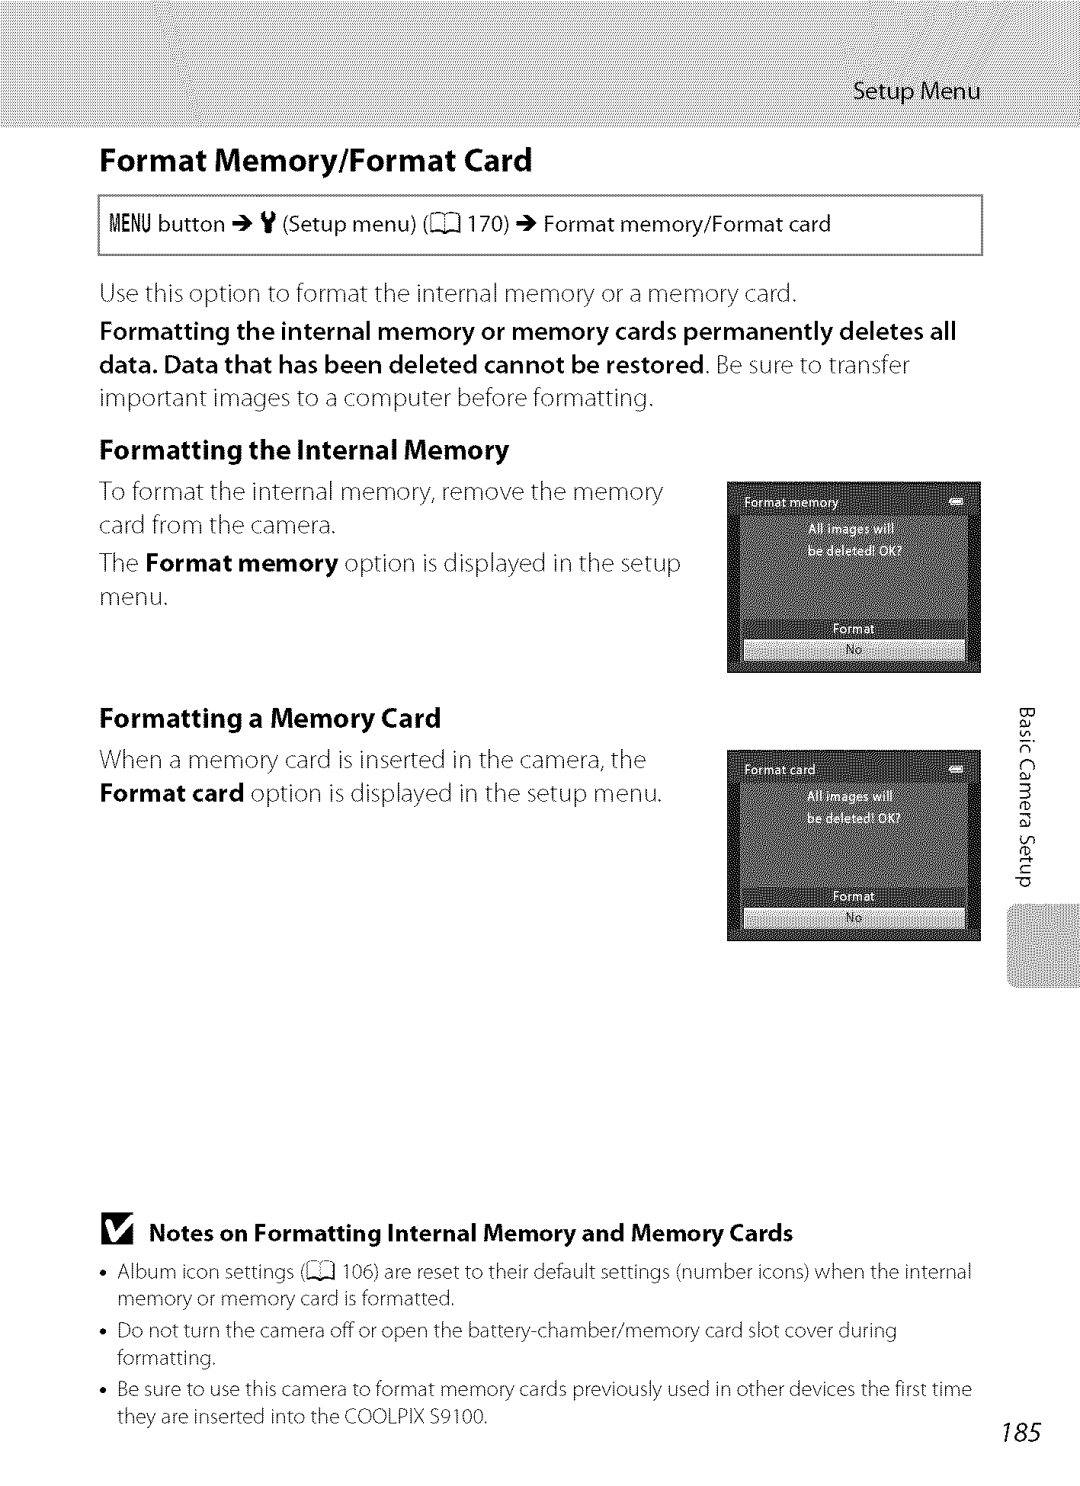 Nikon S9100 user manual Memory/Format, Formatting the Internal Memory, Formatting a Memory Card 